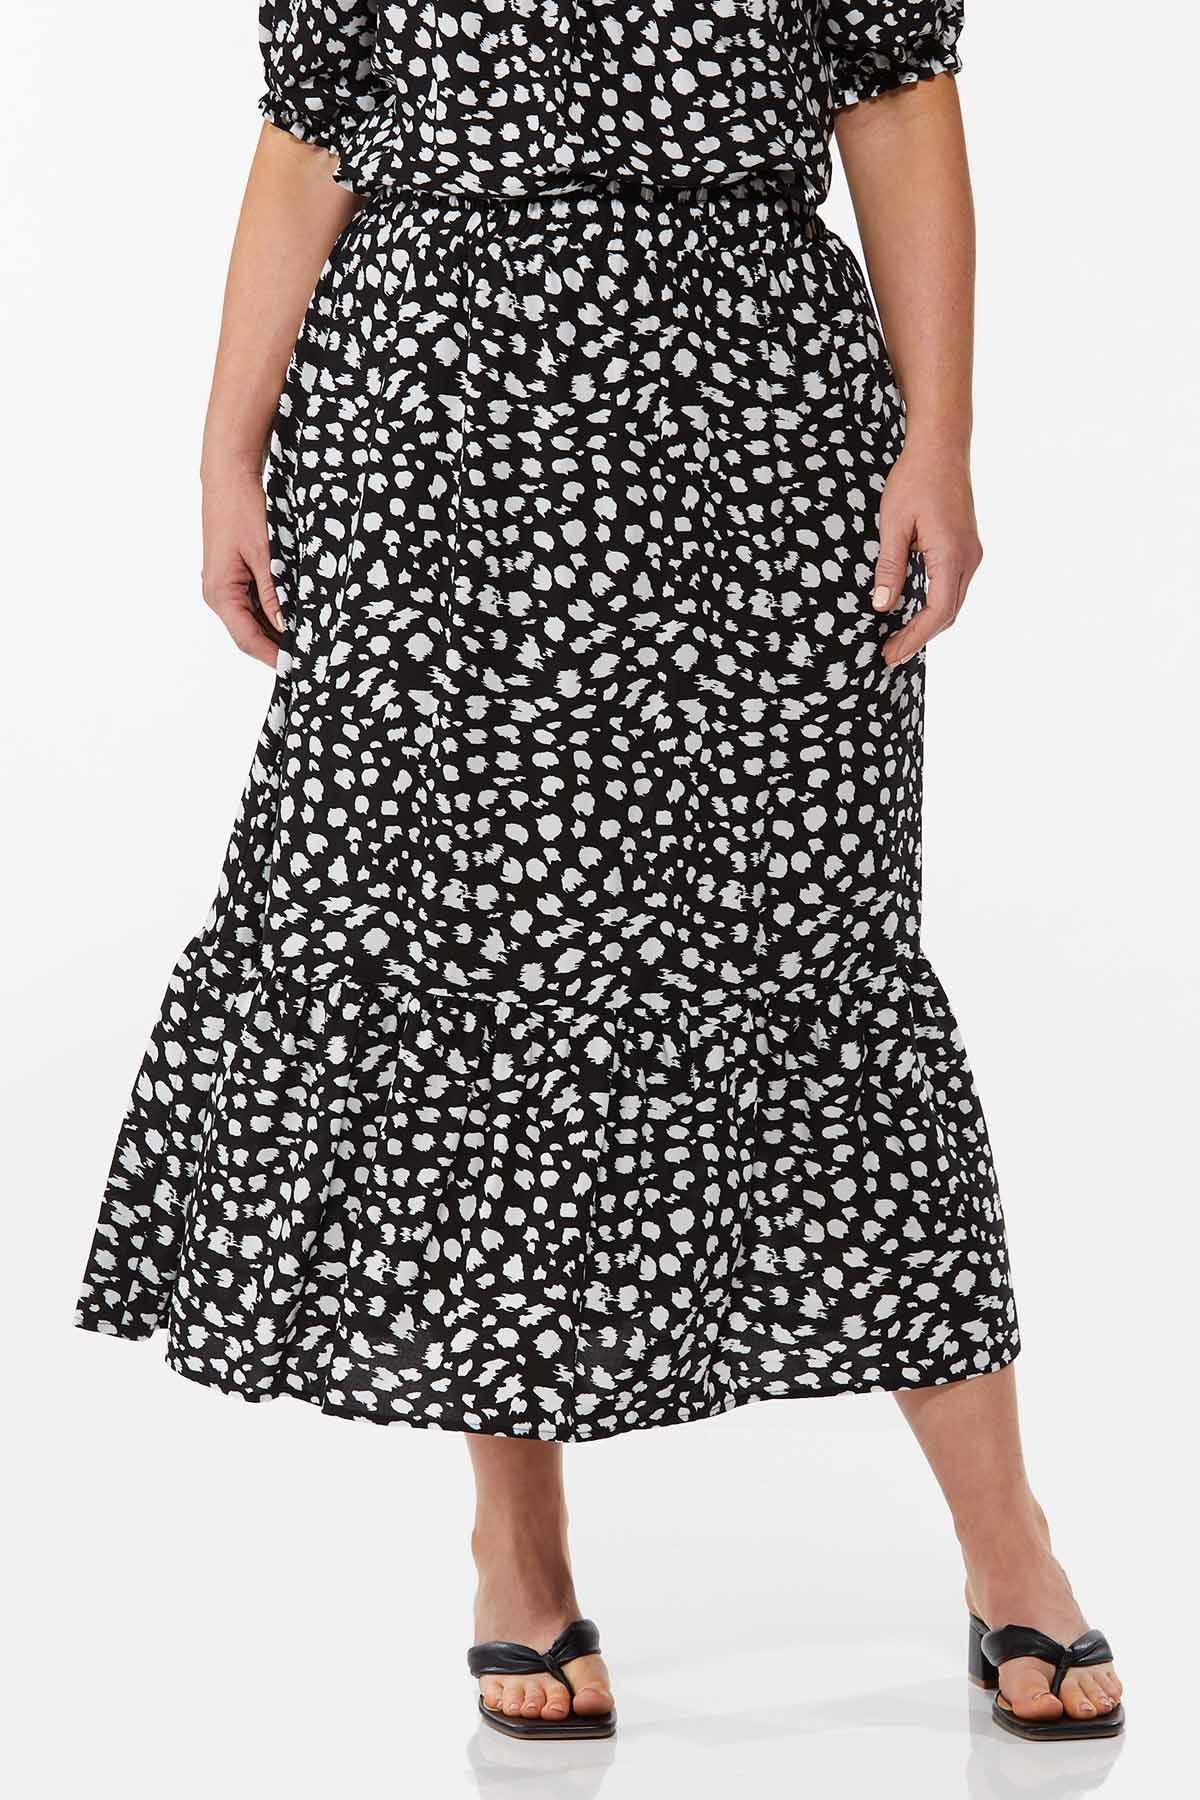 Plus Size Black White Maxi Skirt